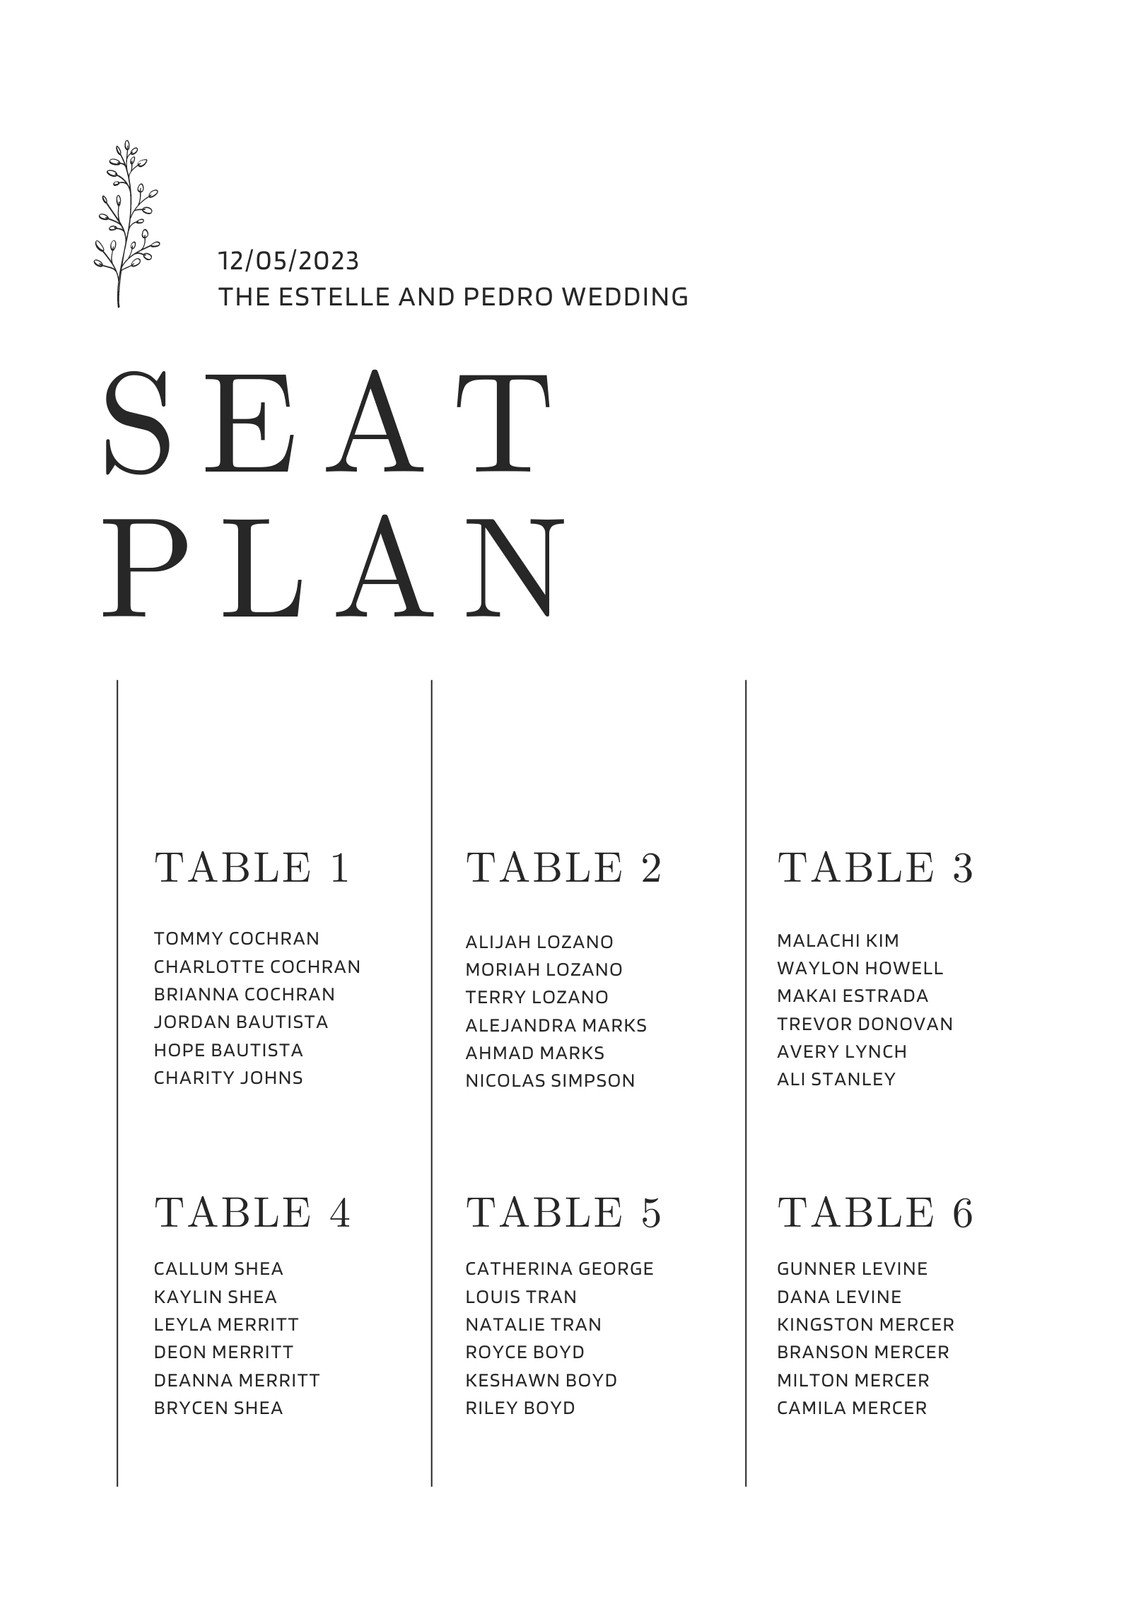 printable seating chart template